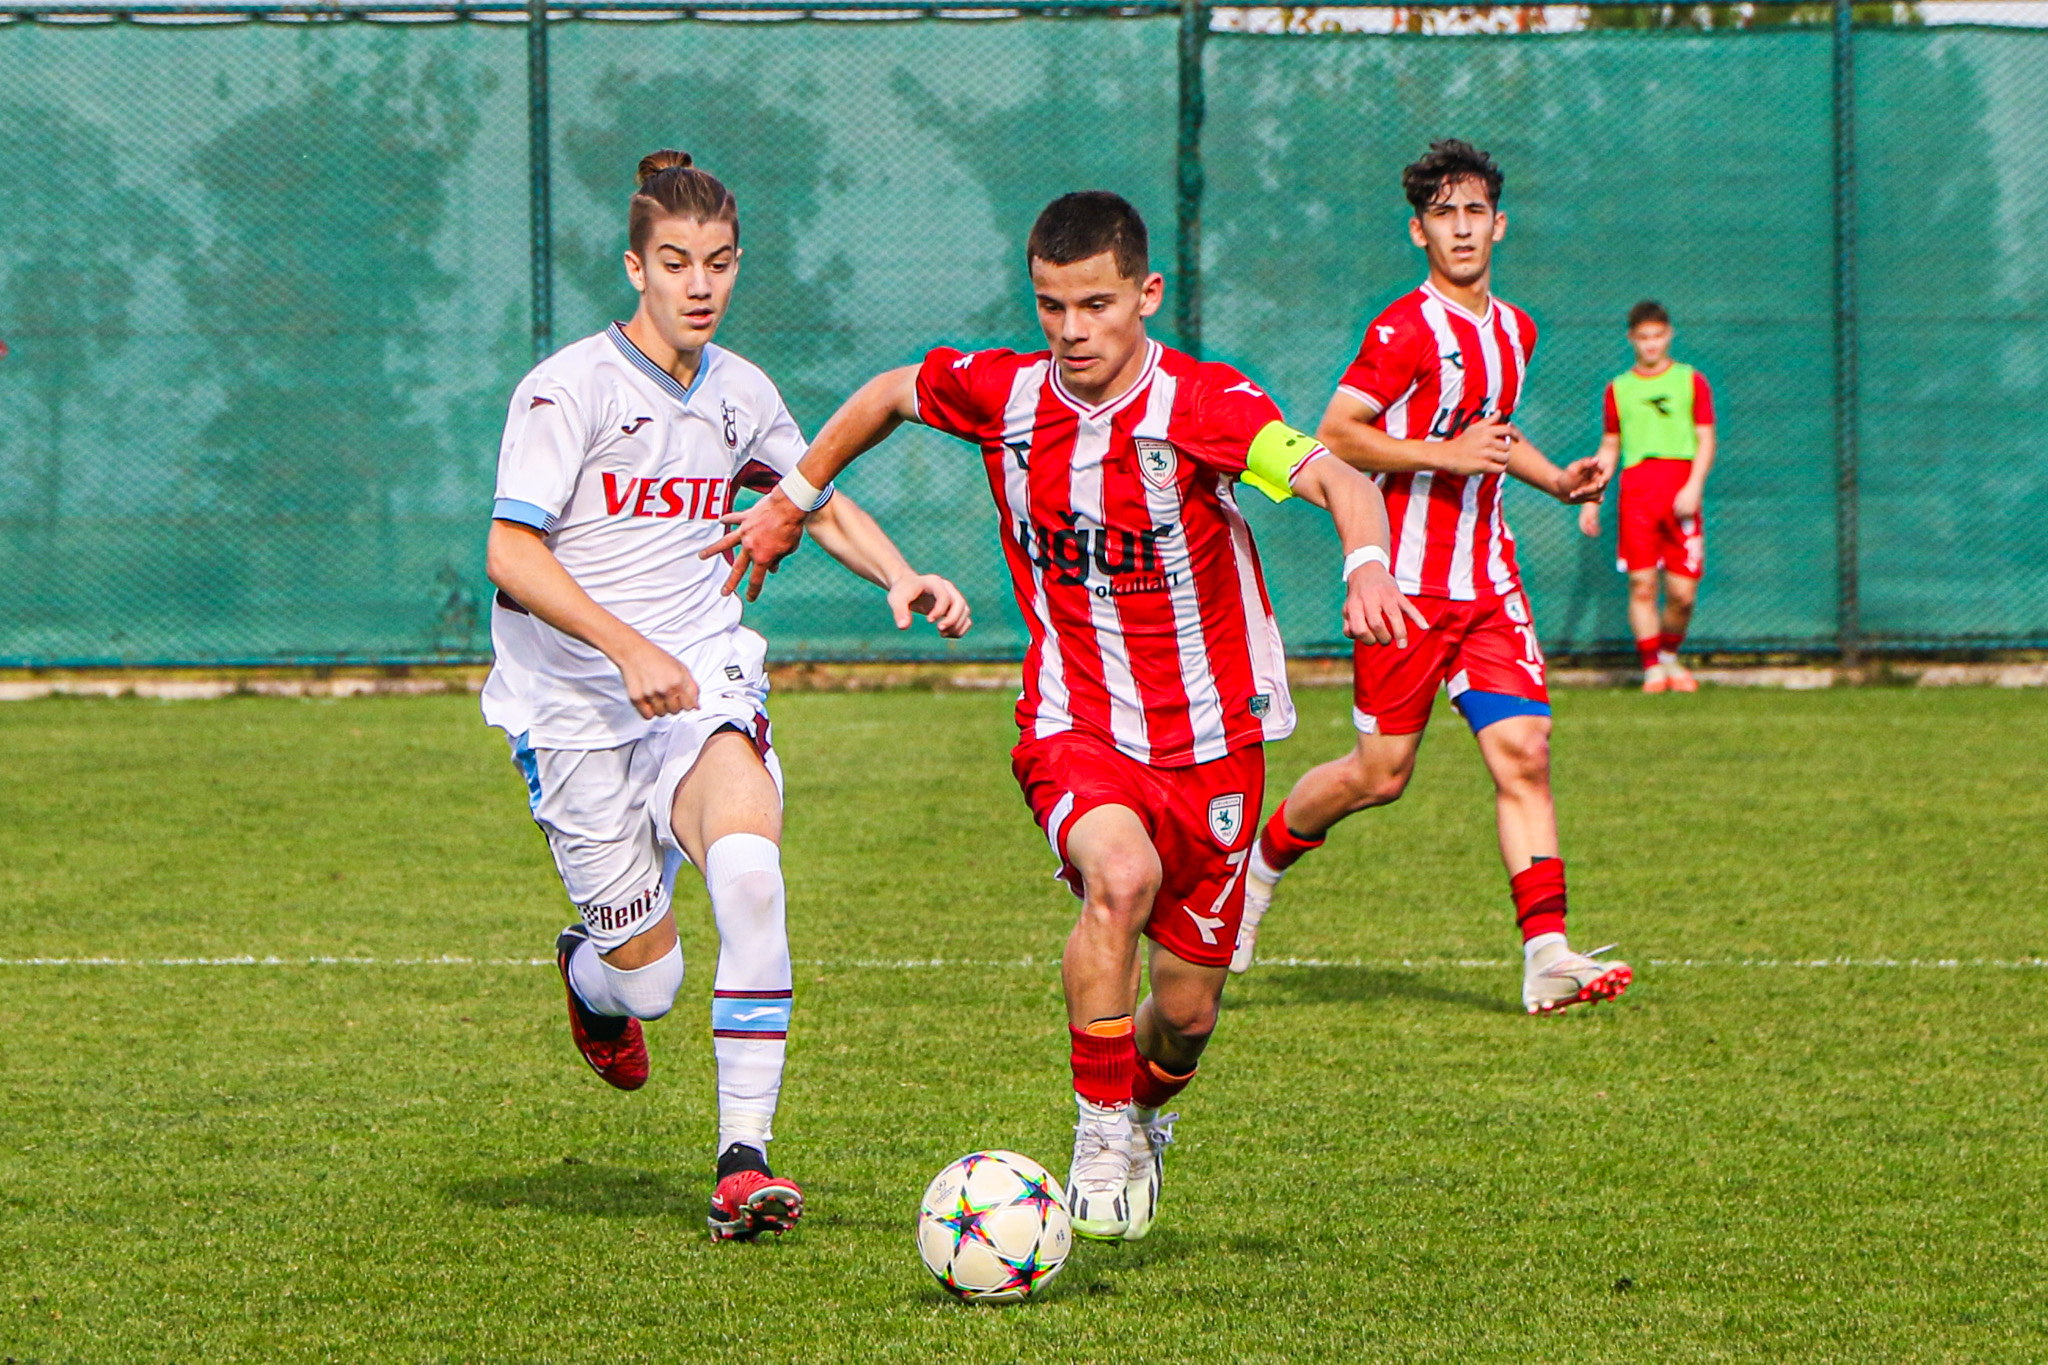 Yılport Samsunspor U16 farklı mağlup oldu